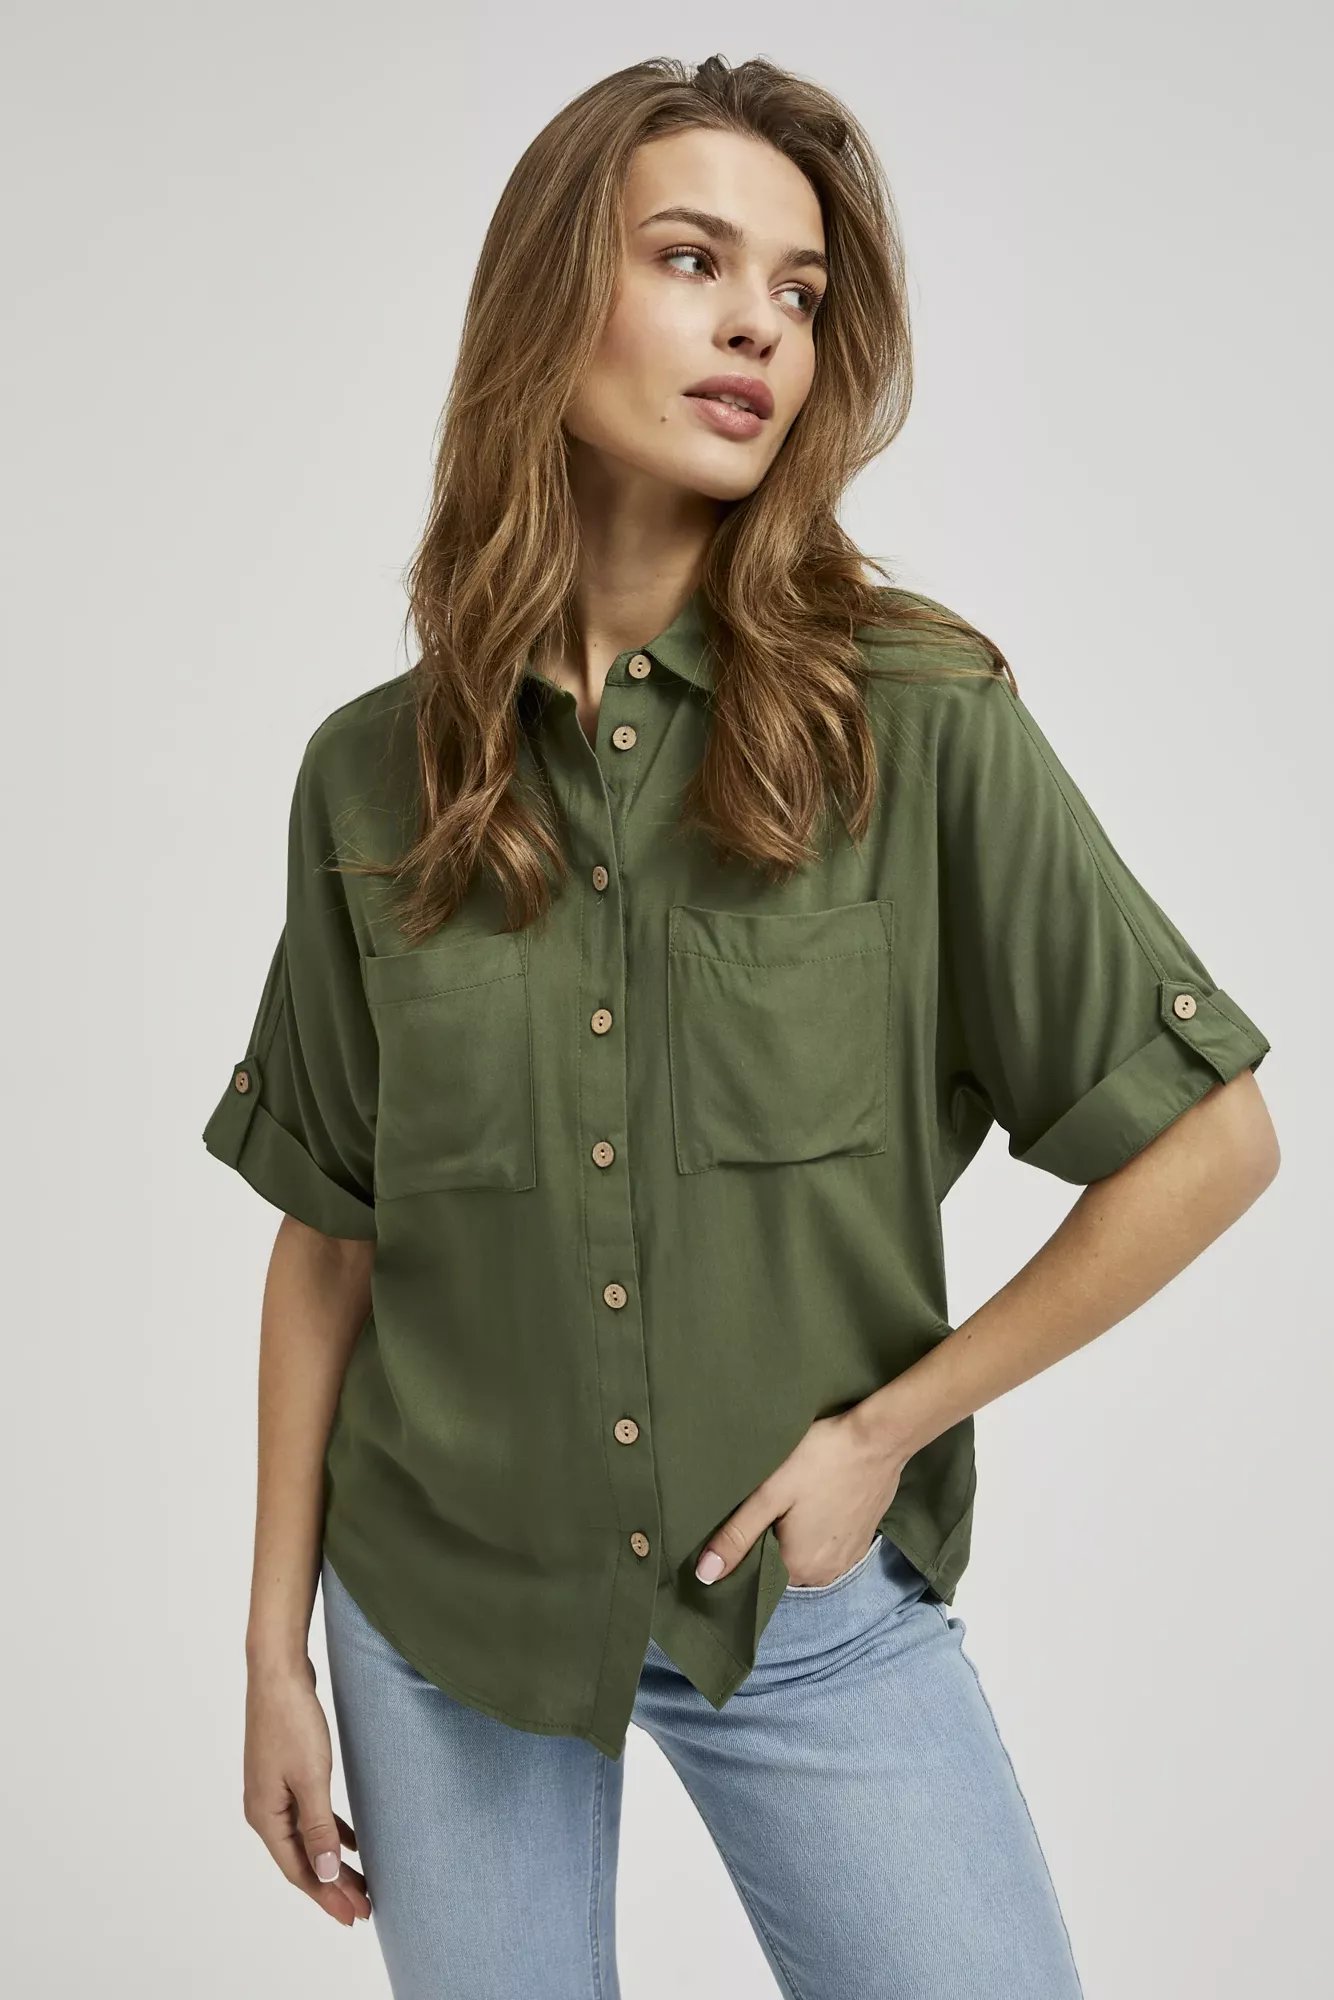 Green Women's Shirt